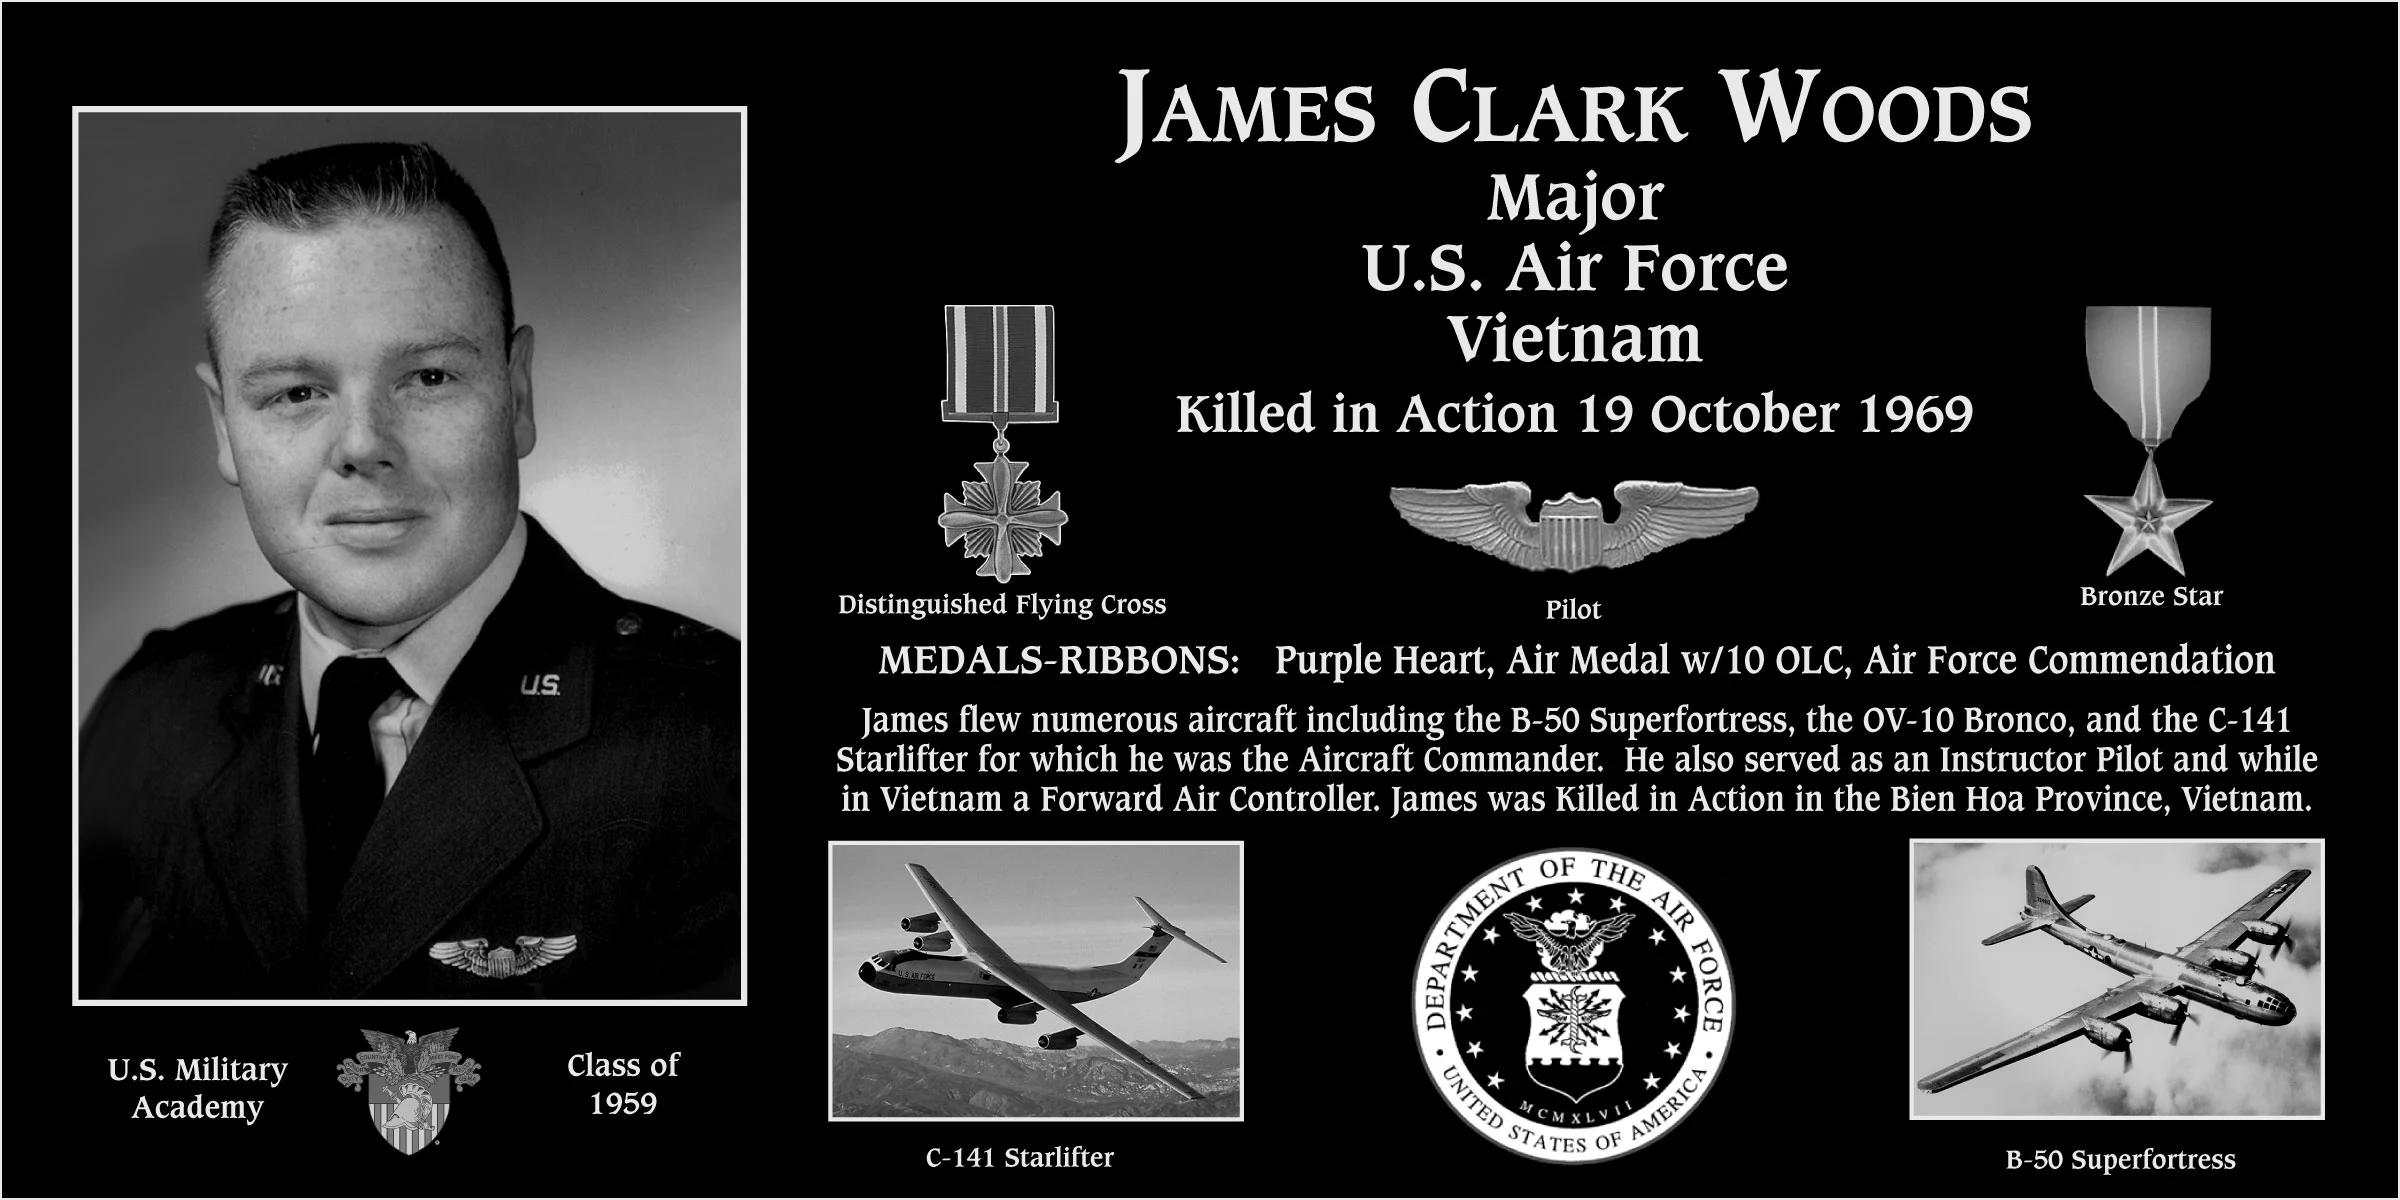 James Clark Woods